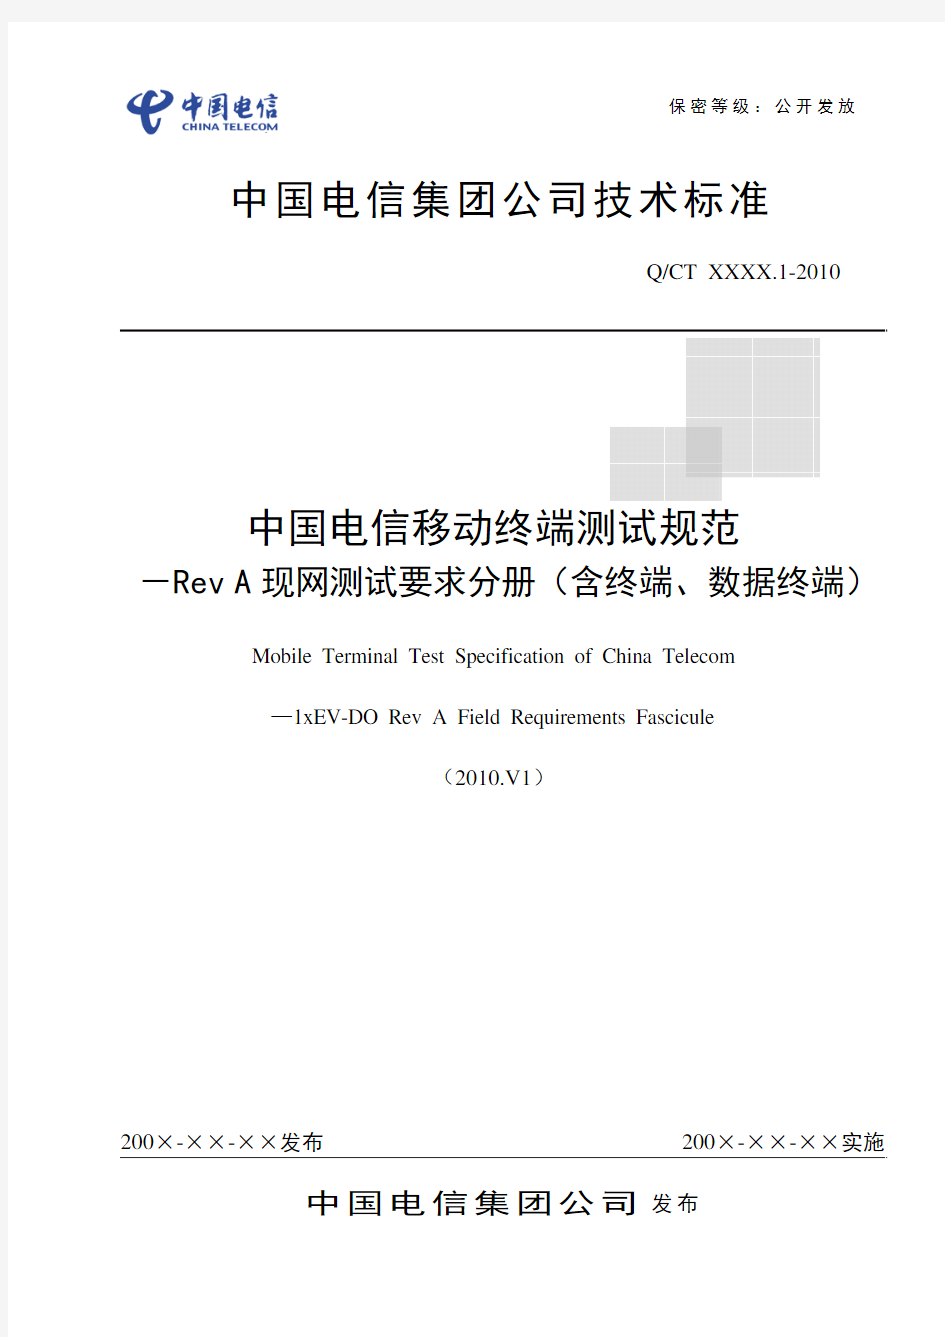 中国电信移动终端测试规范-Rev A现网测试要求分册(含终端、数据终端)